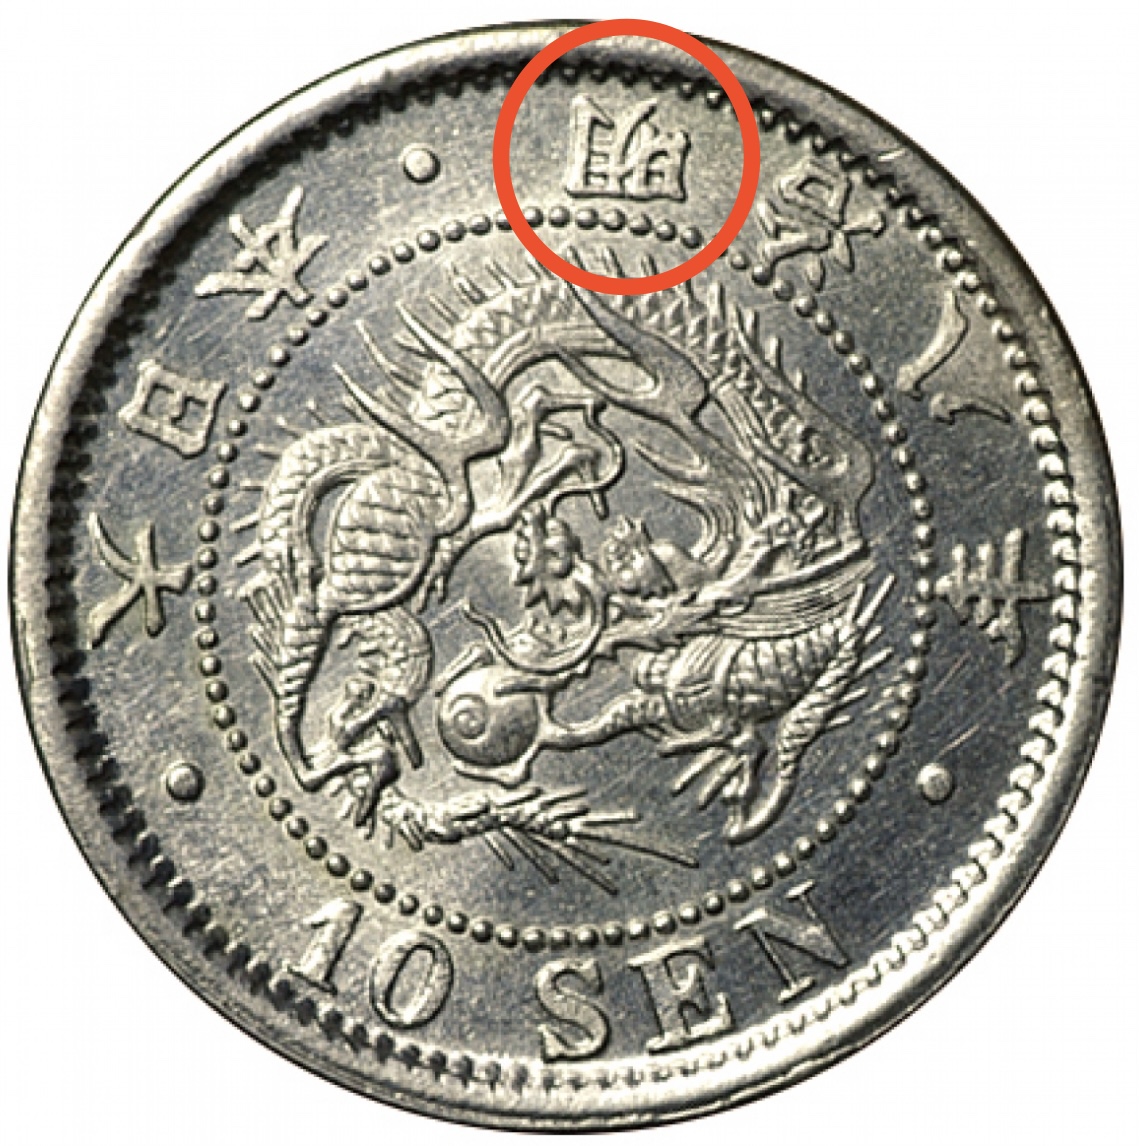 竜10銭銀貨 - 旧貨幣/金貨/銀貨/記念硬貨